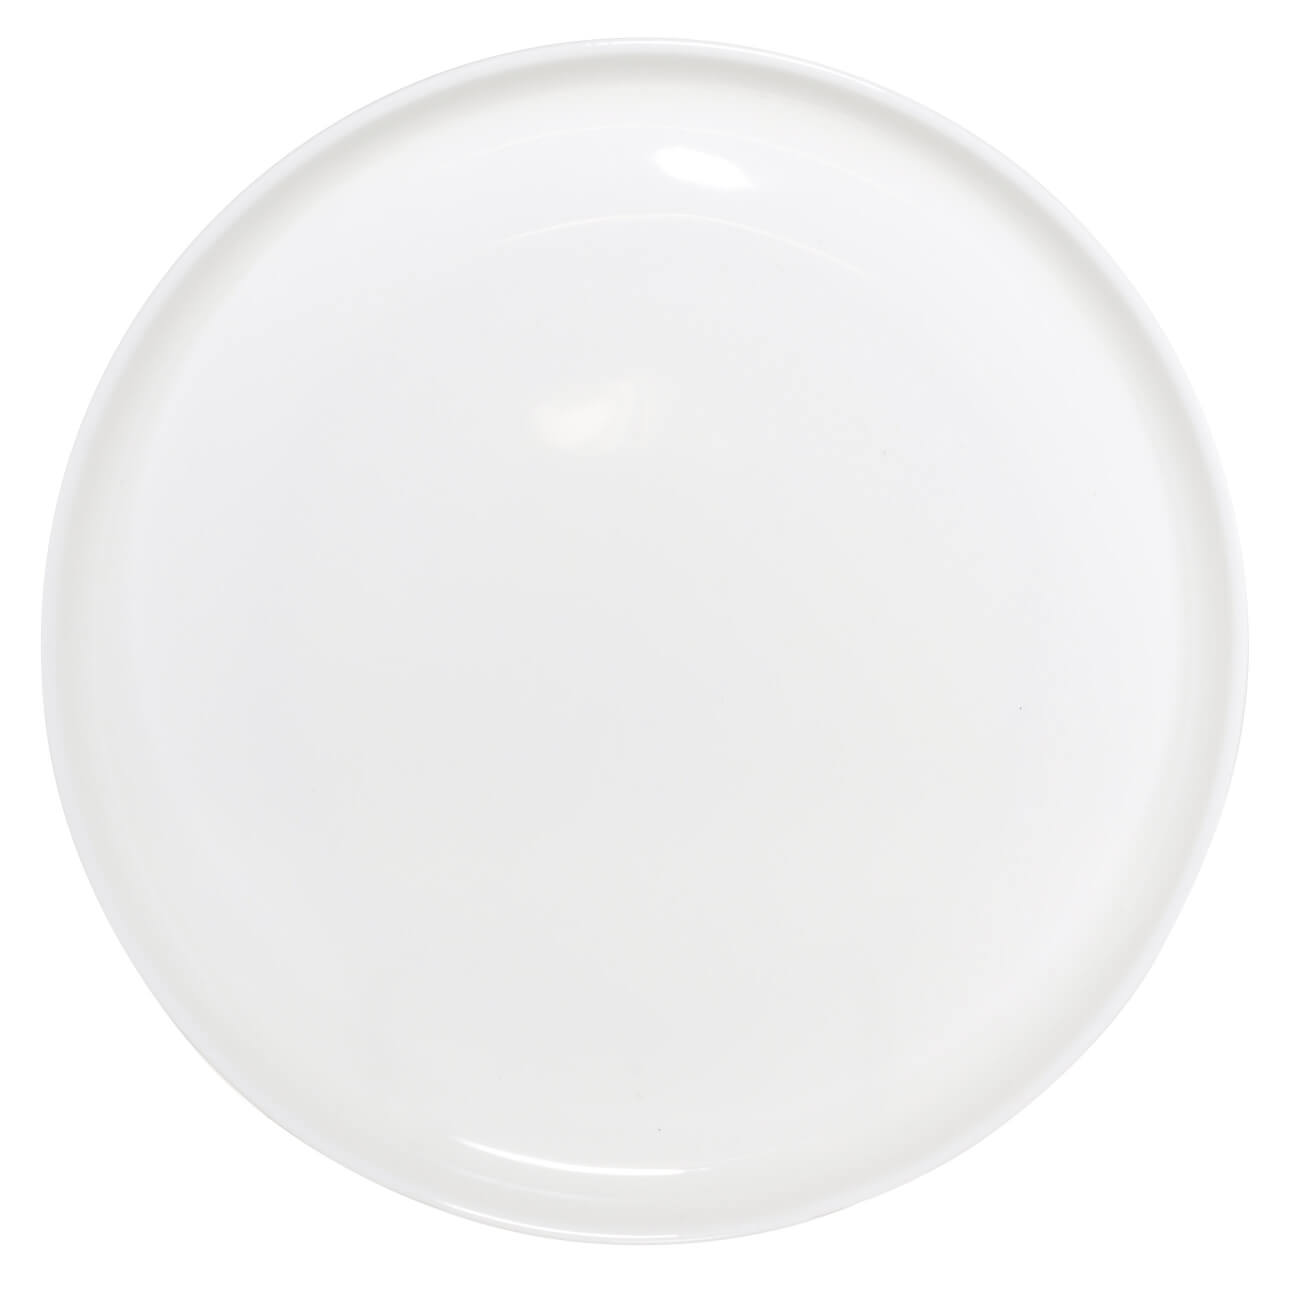 Тарелка обеденная, 26 см, фарфор F, белая, Ideal white тарелка обеденная фарфор 24 см круглая tint lefard 48 817 бежевая